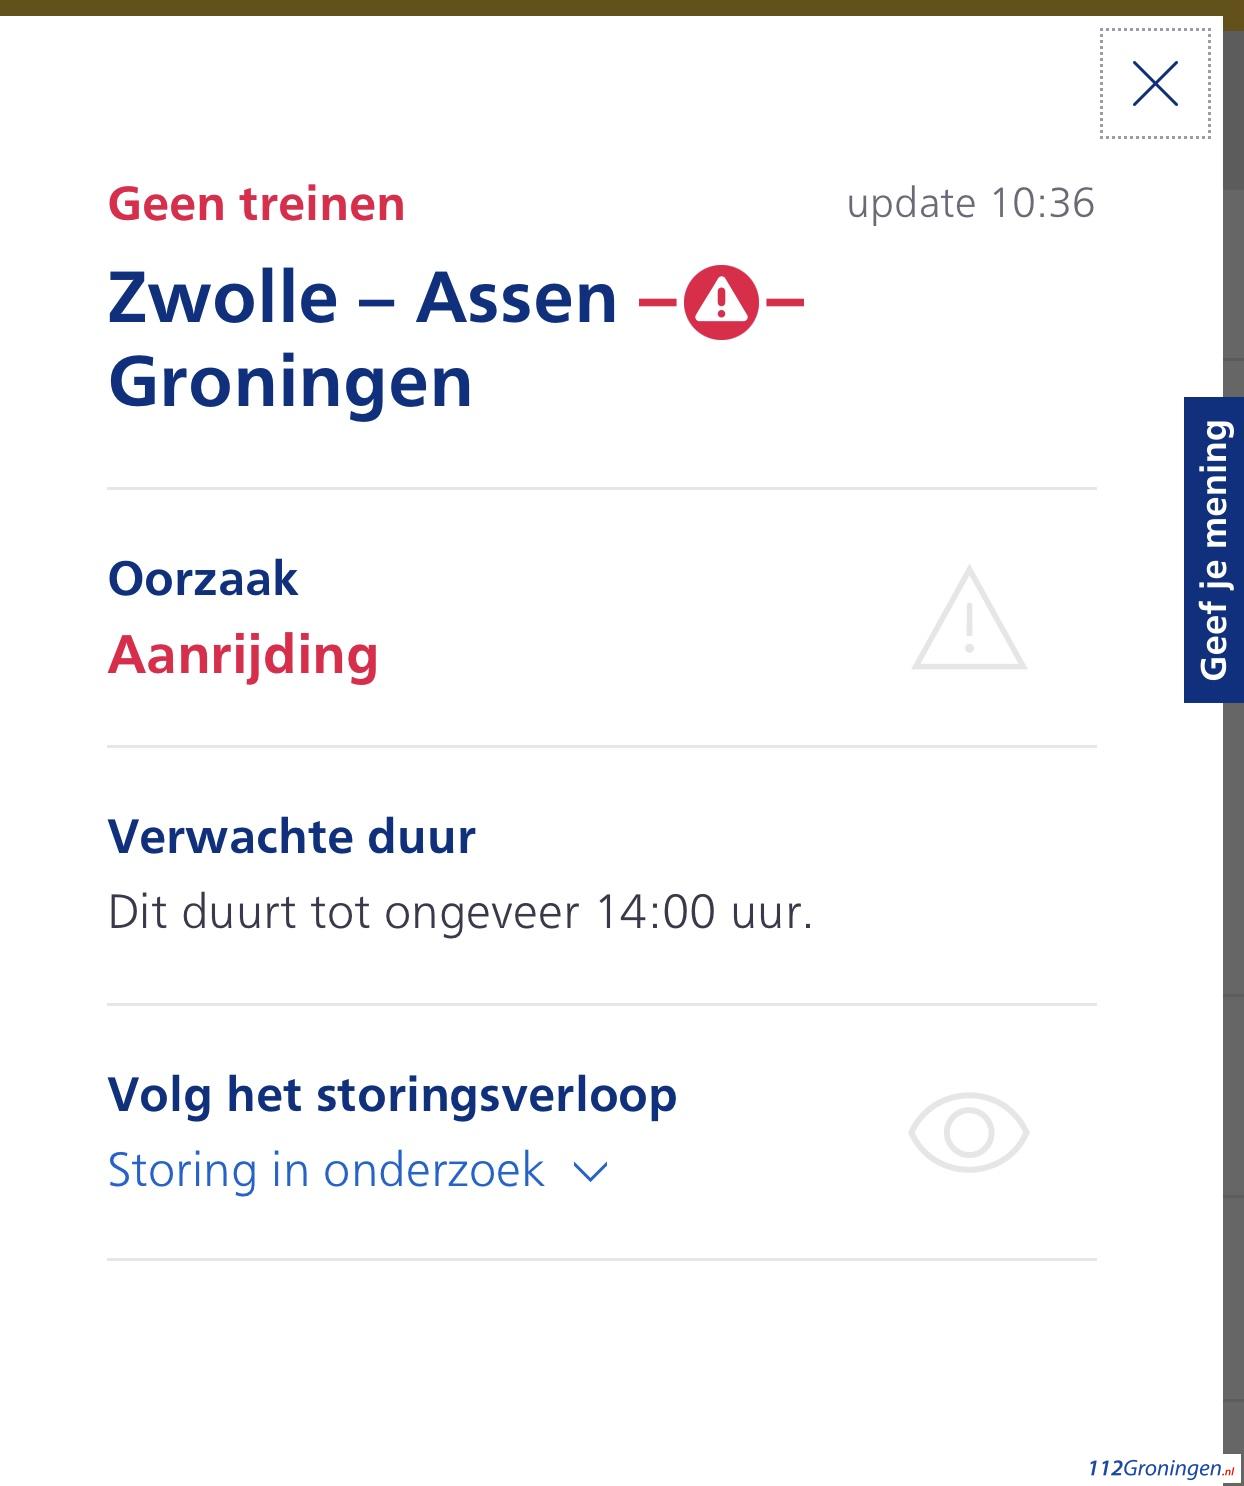 Geen treinverkeer tussen Groningen en Assen, vanwege aanrijding.